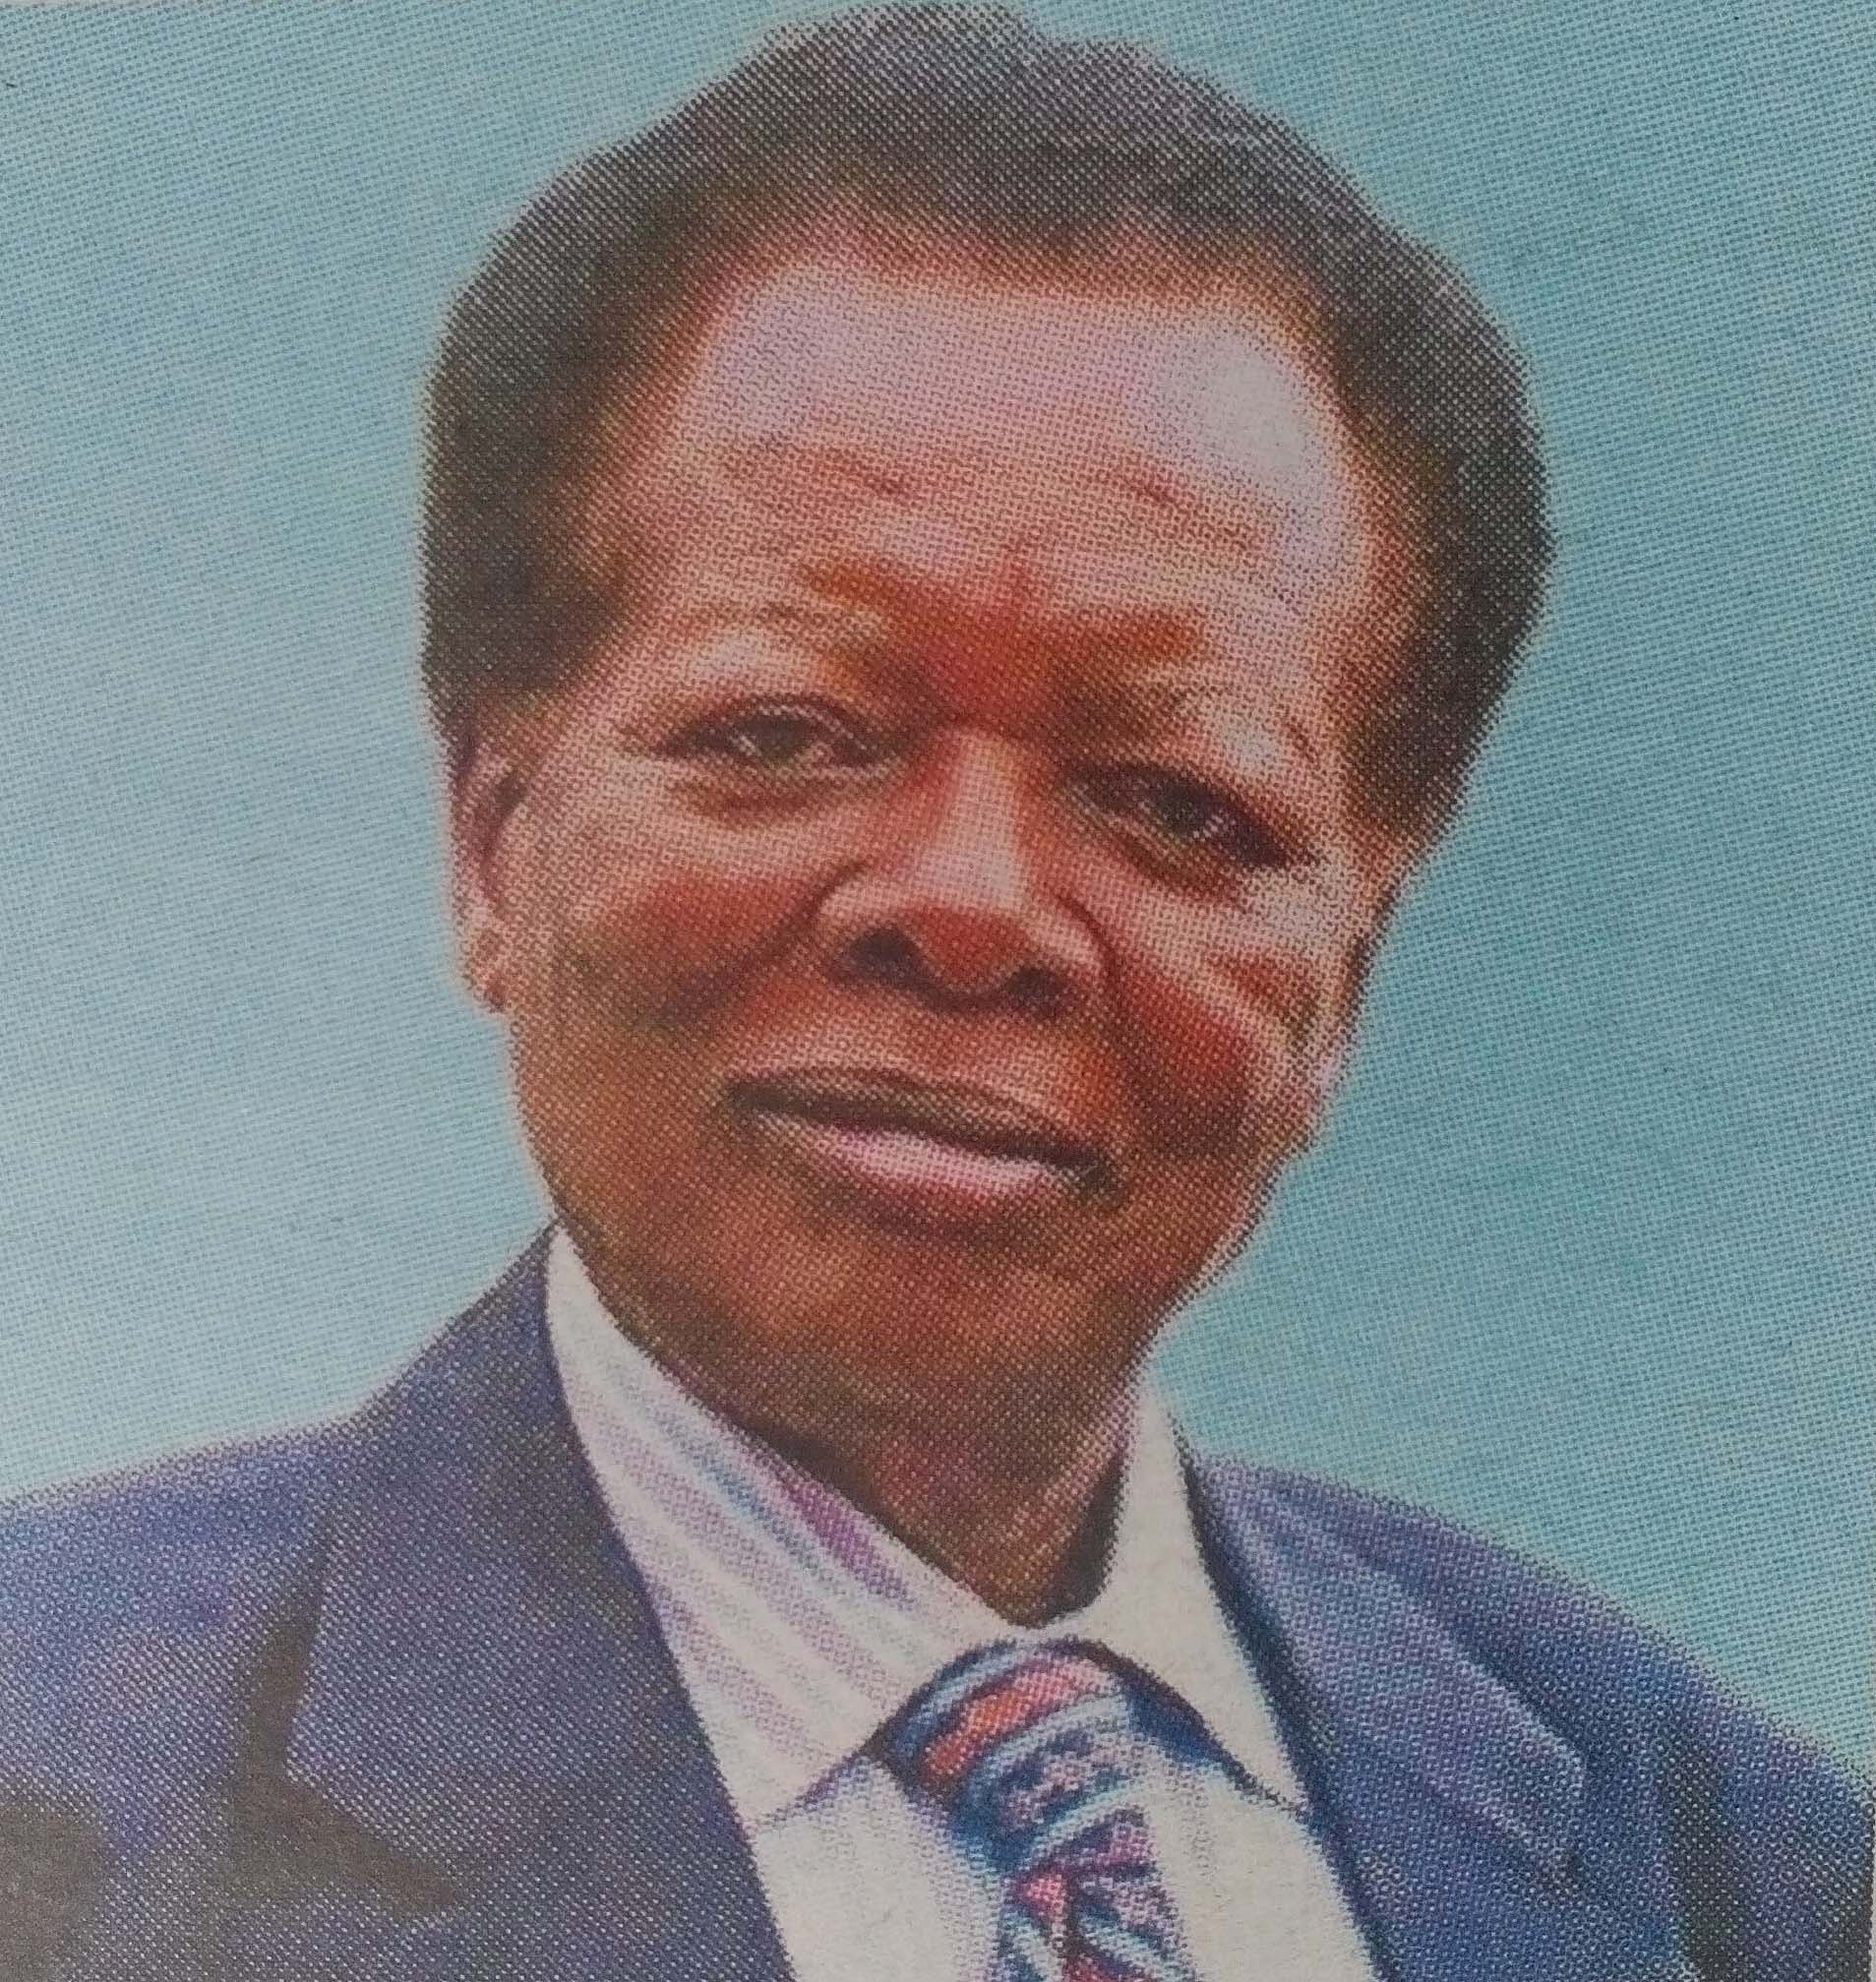 Obituary Image of Nyaringo Obure